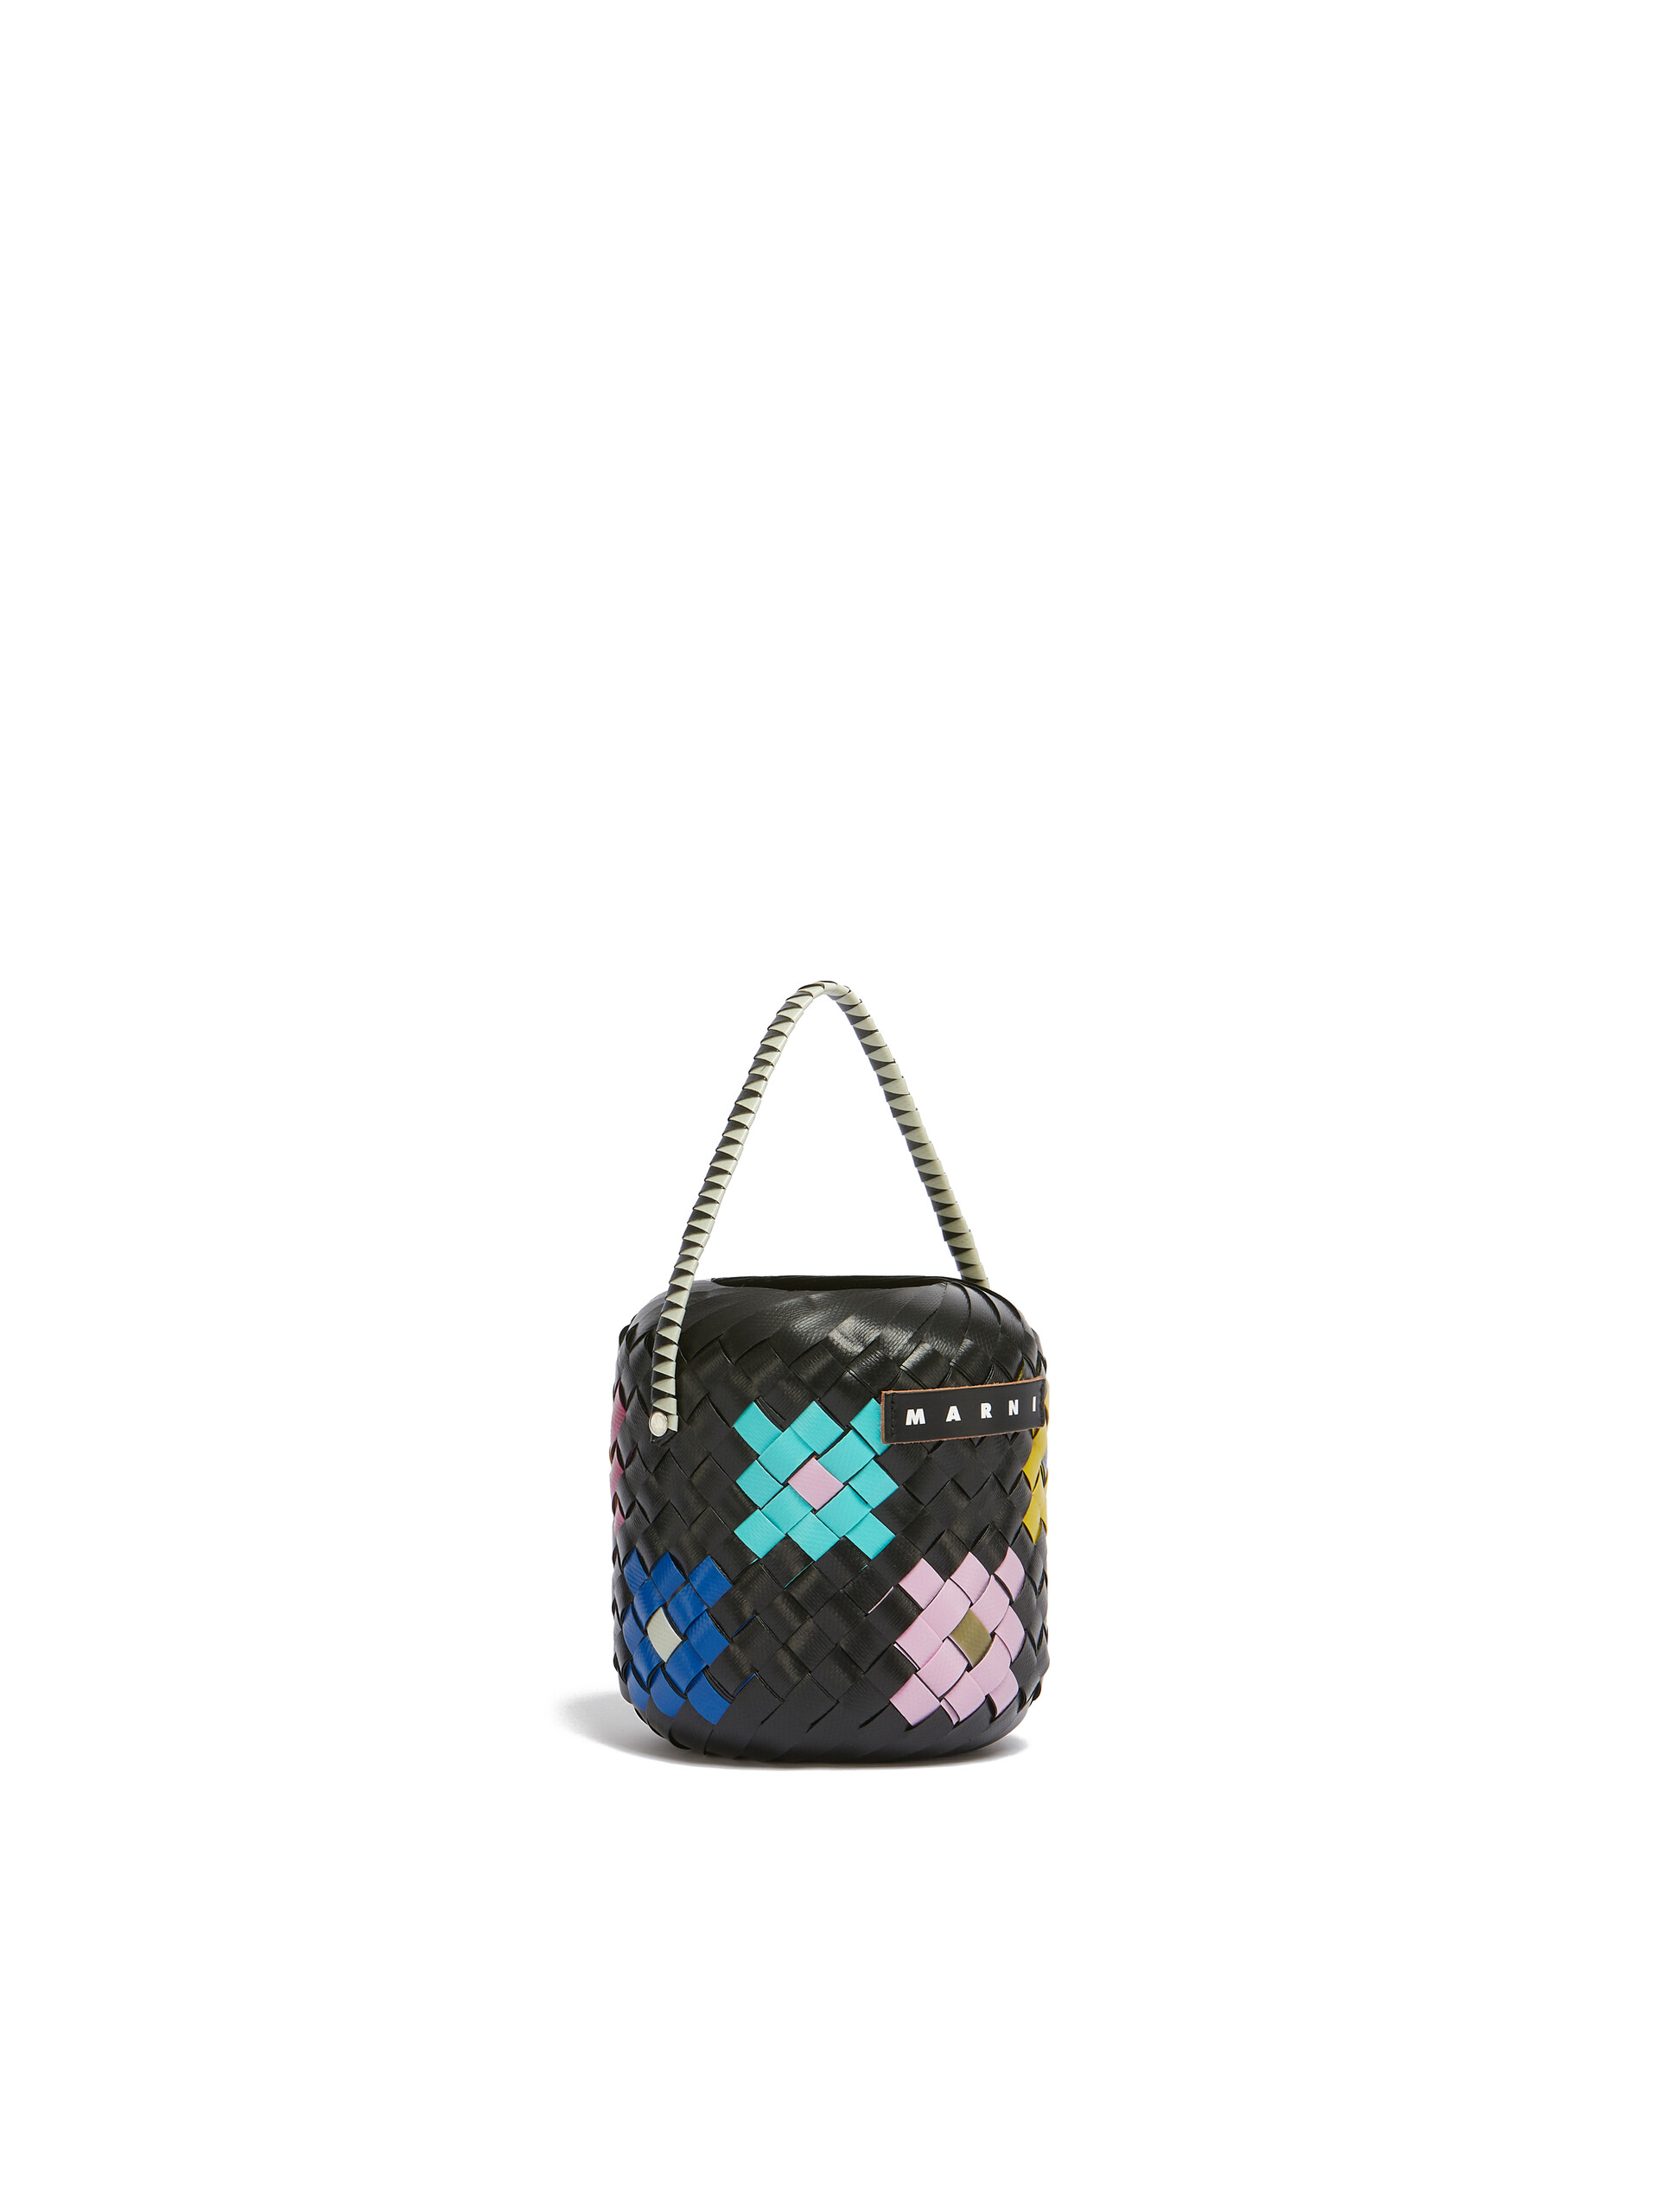 Bolso MARNI MARKET BUCKET pequeño negro con flor - Bolsos shopper - Image 2